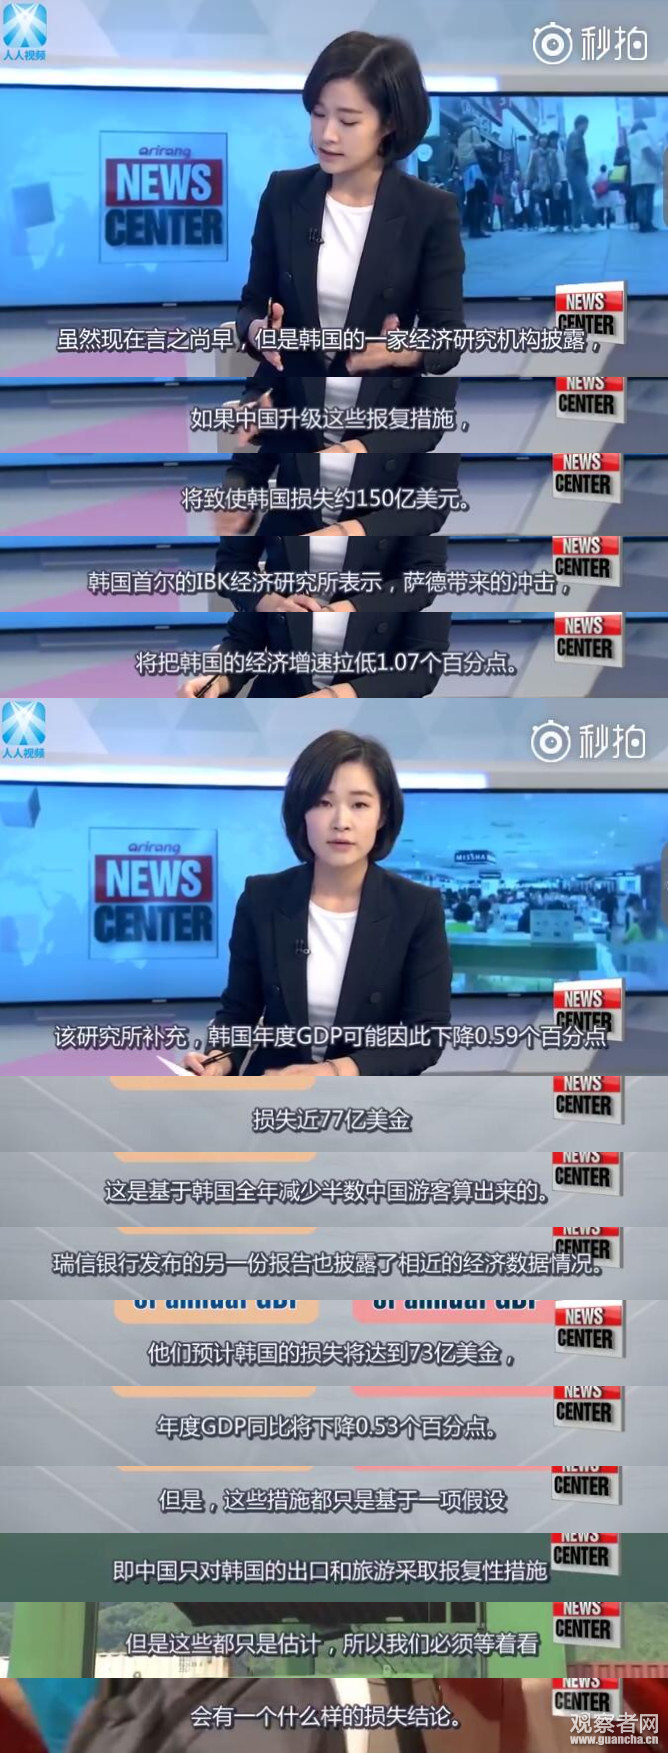 不少中国网友看过这些数据之后，表示要继续抵制韩国部署萨德。